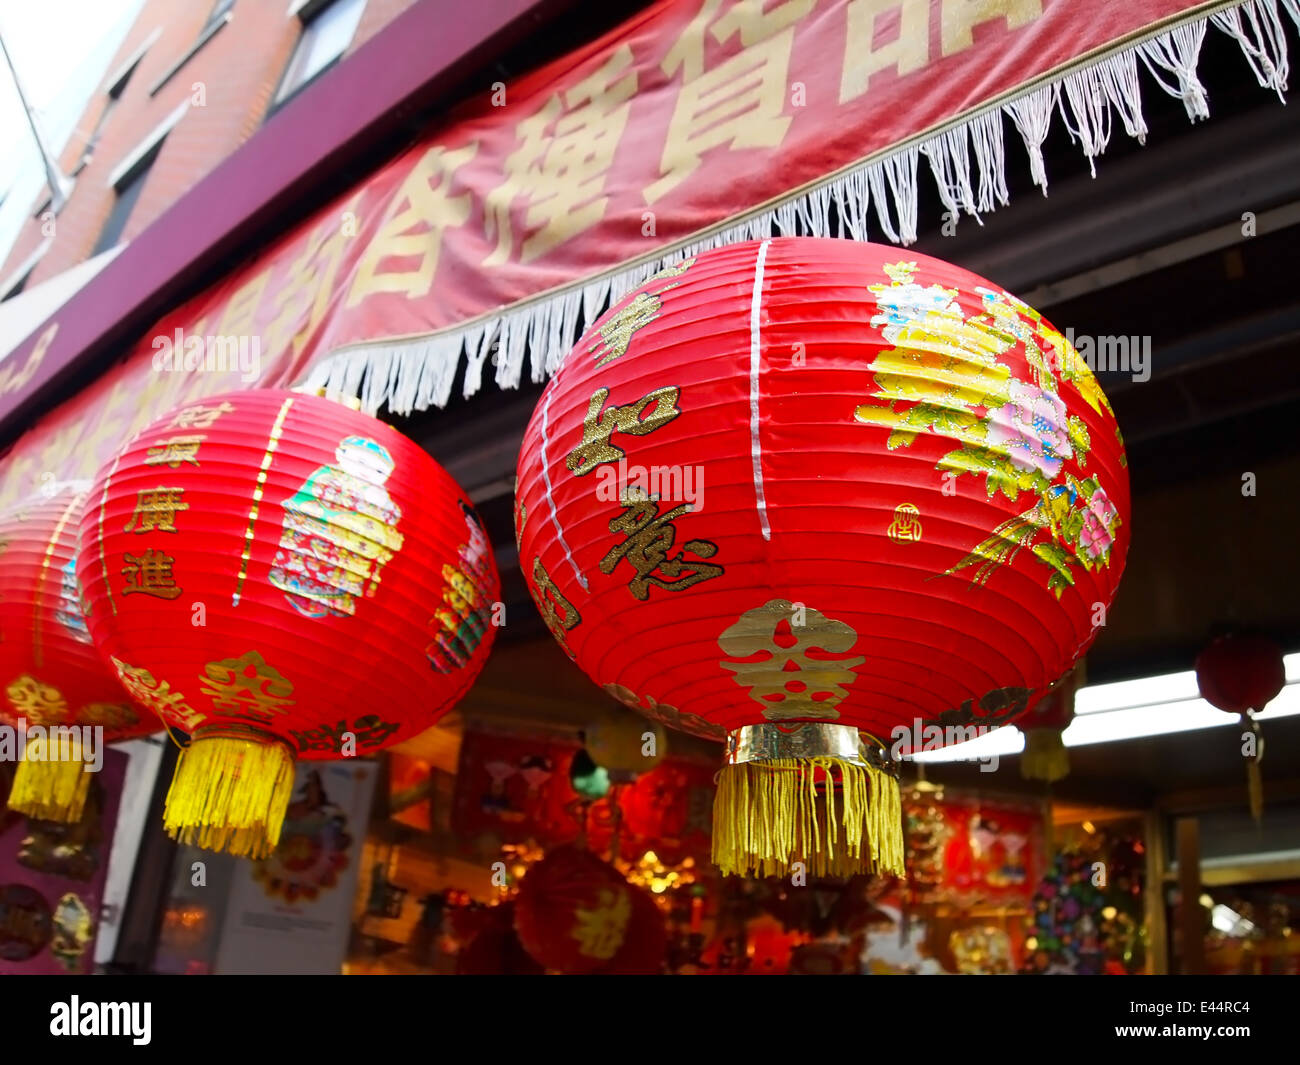 Un peu de papier rouge, joliment décorées de lanternes chinoises sont en face d'une boutique de souvenirs dans le quartier chinois, NYC. Banque D'Images